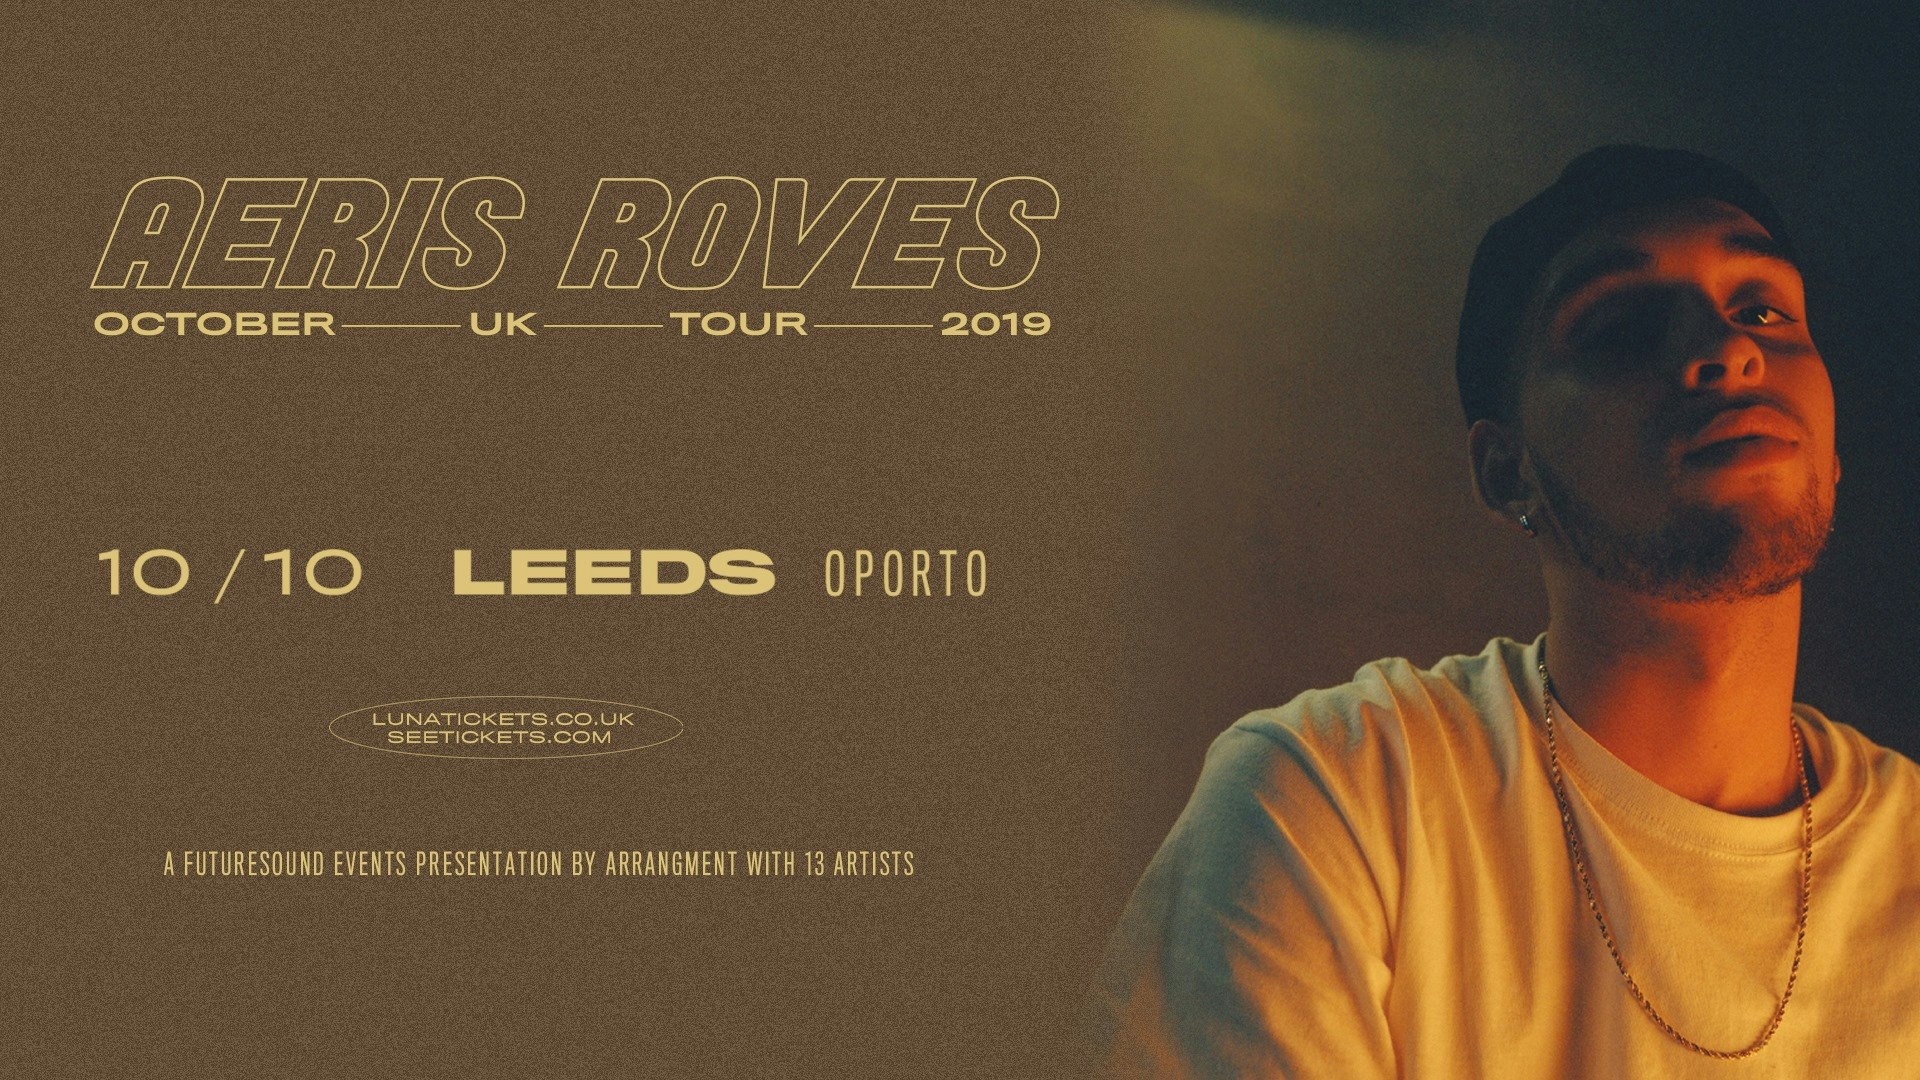 Aeris Roves // Leeds